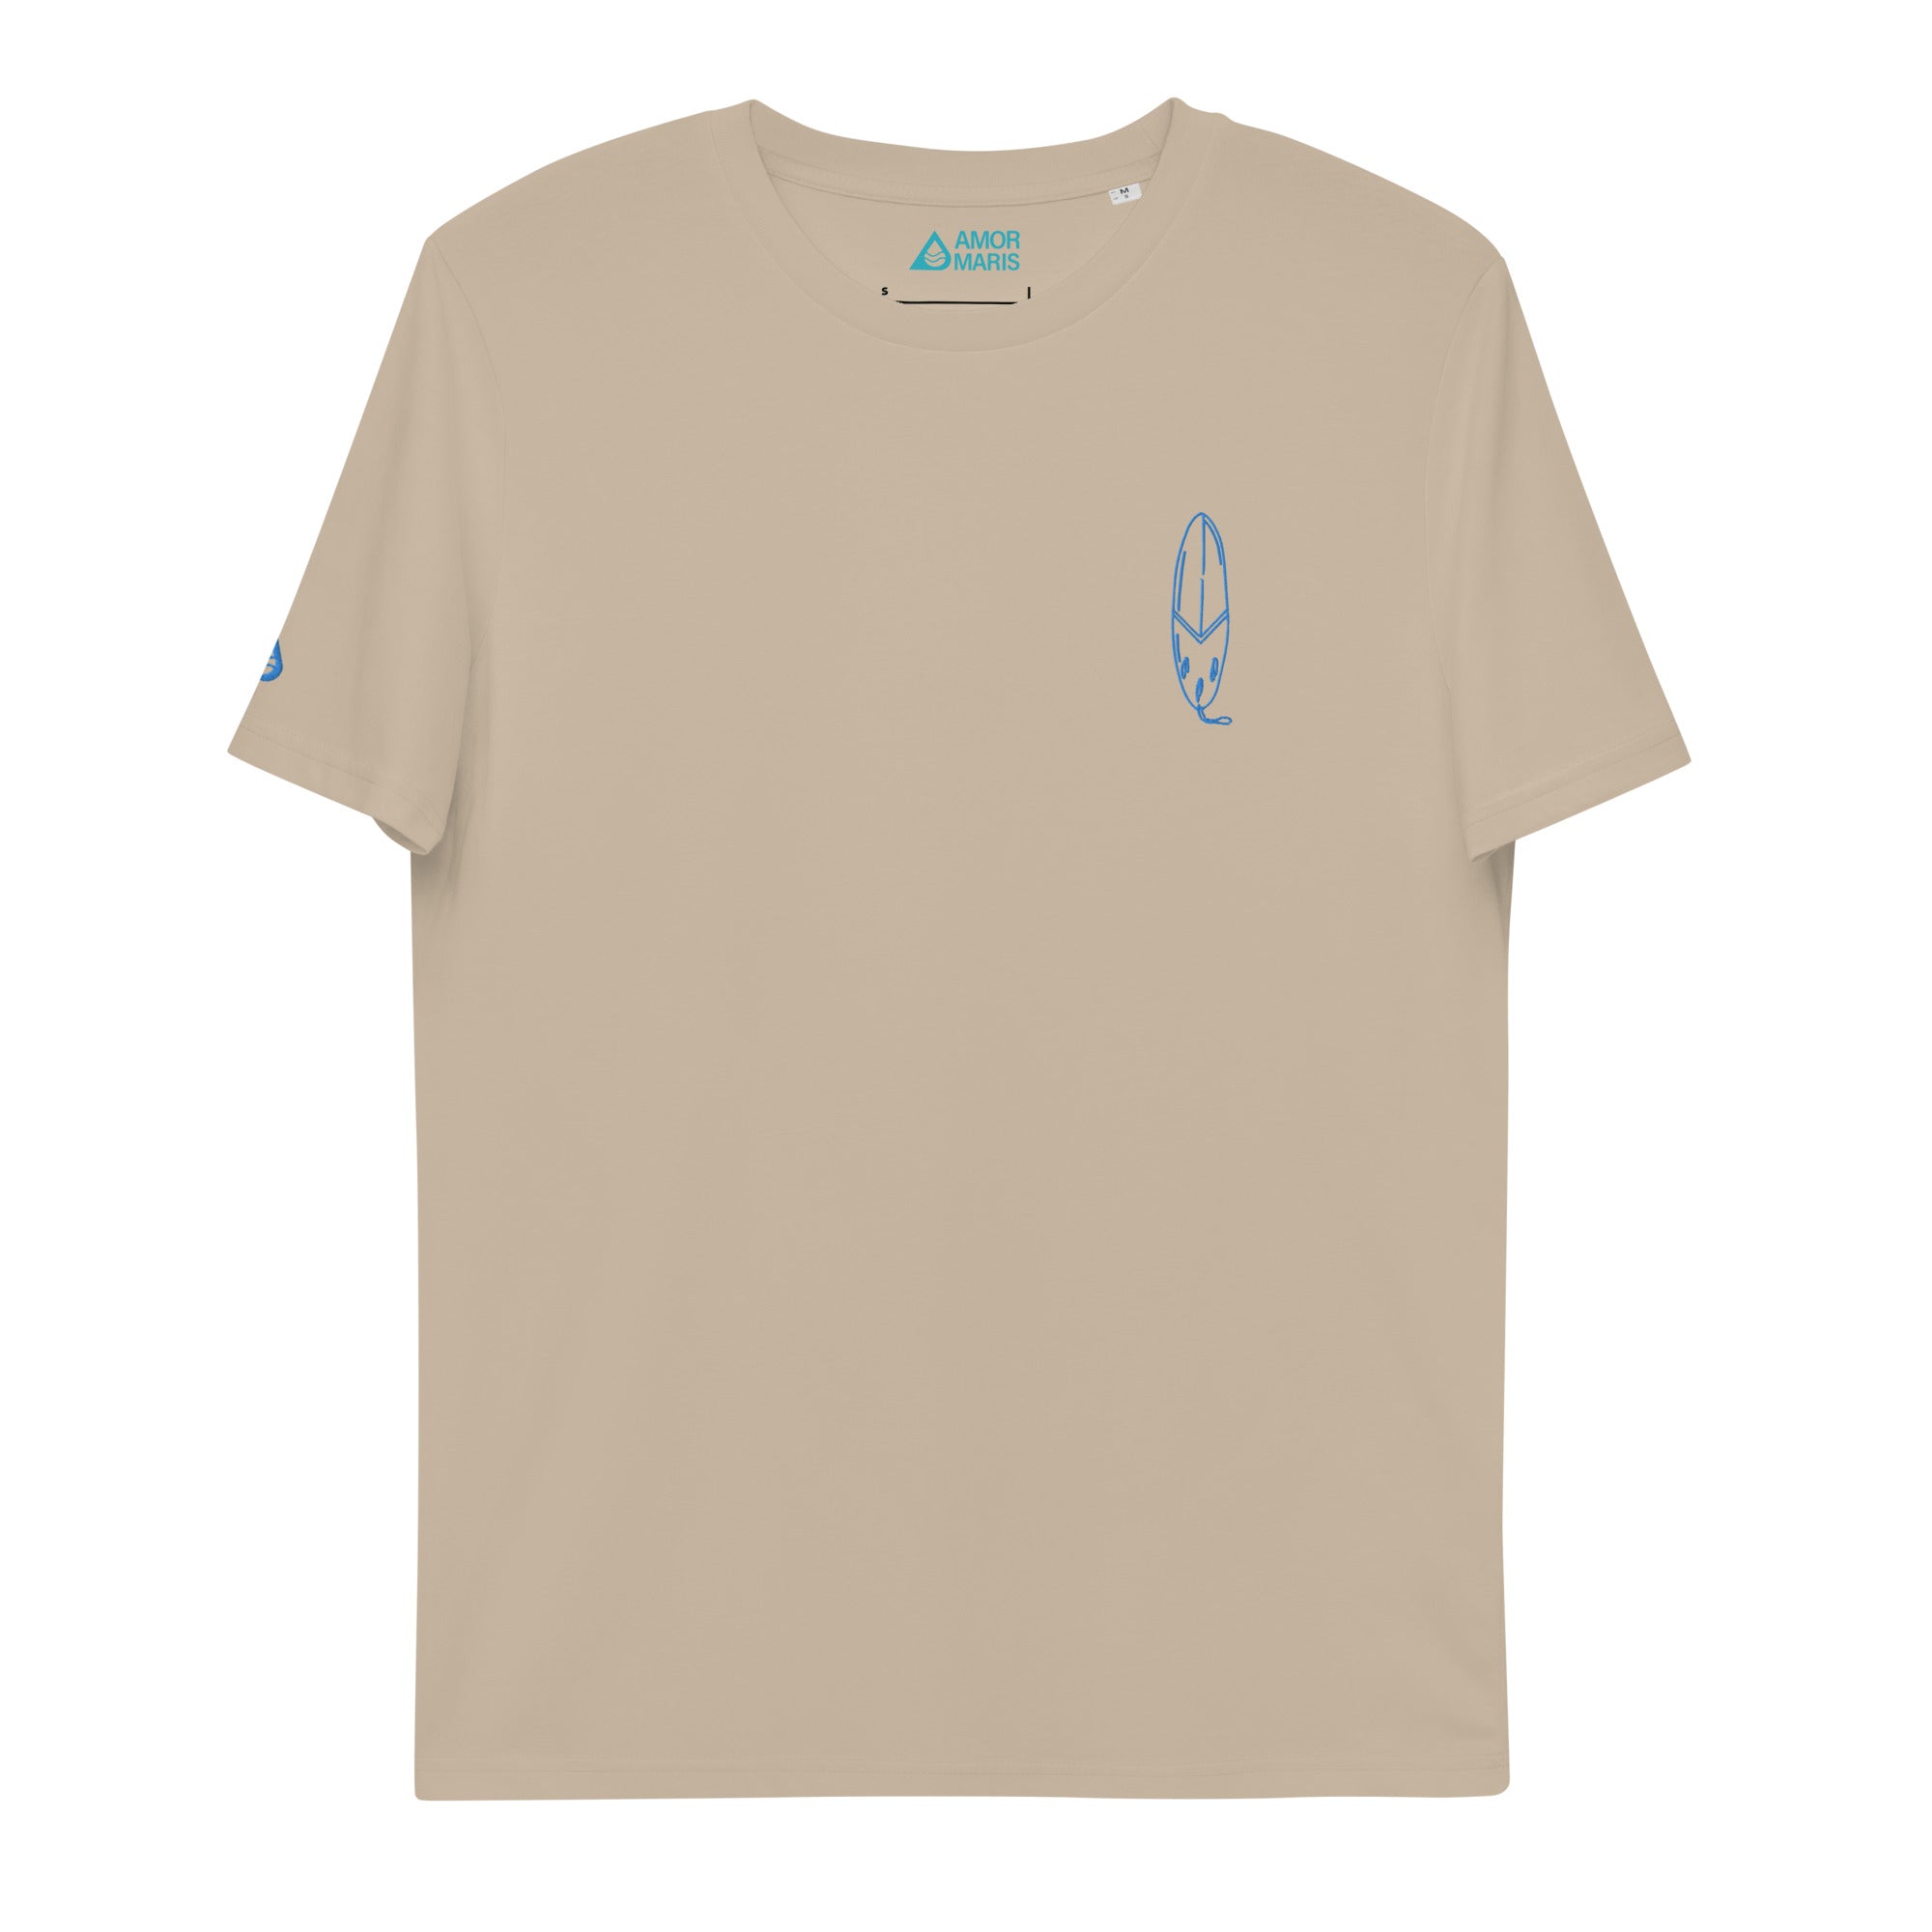 Zörfi - Unisex Bio-T-Shirt